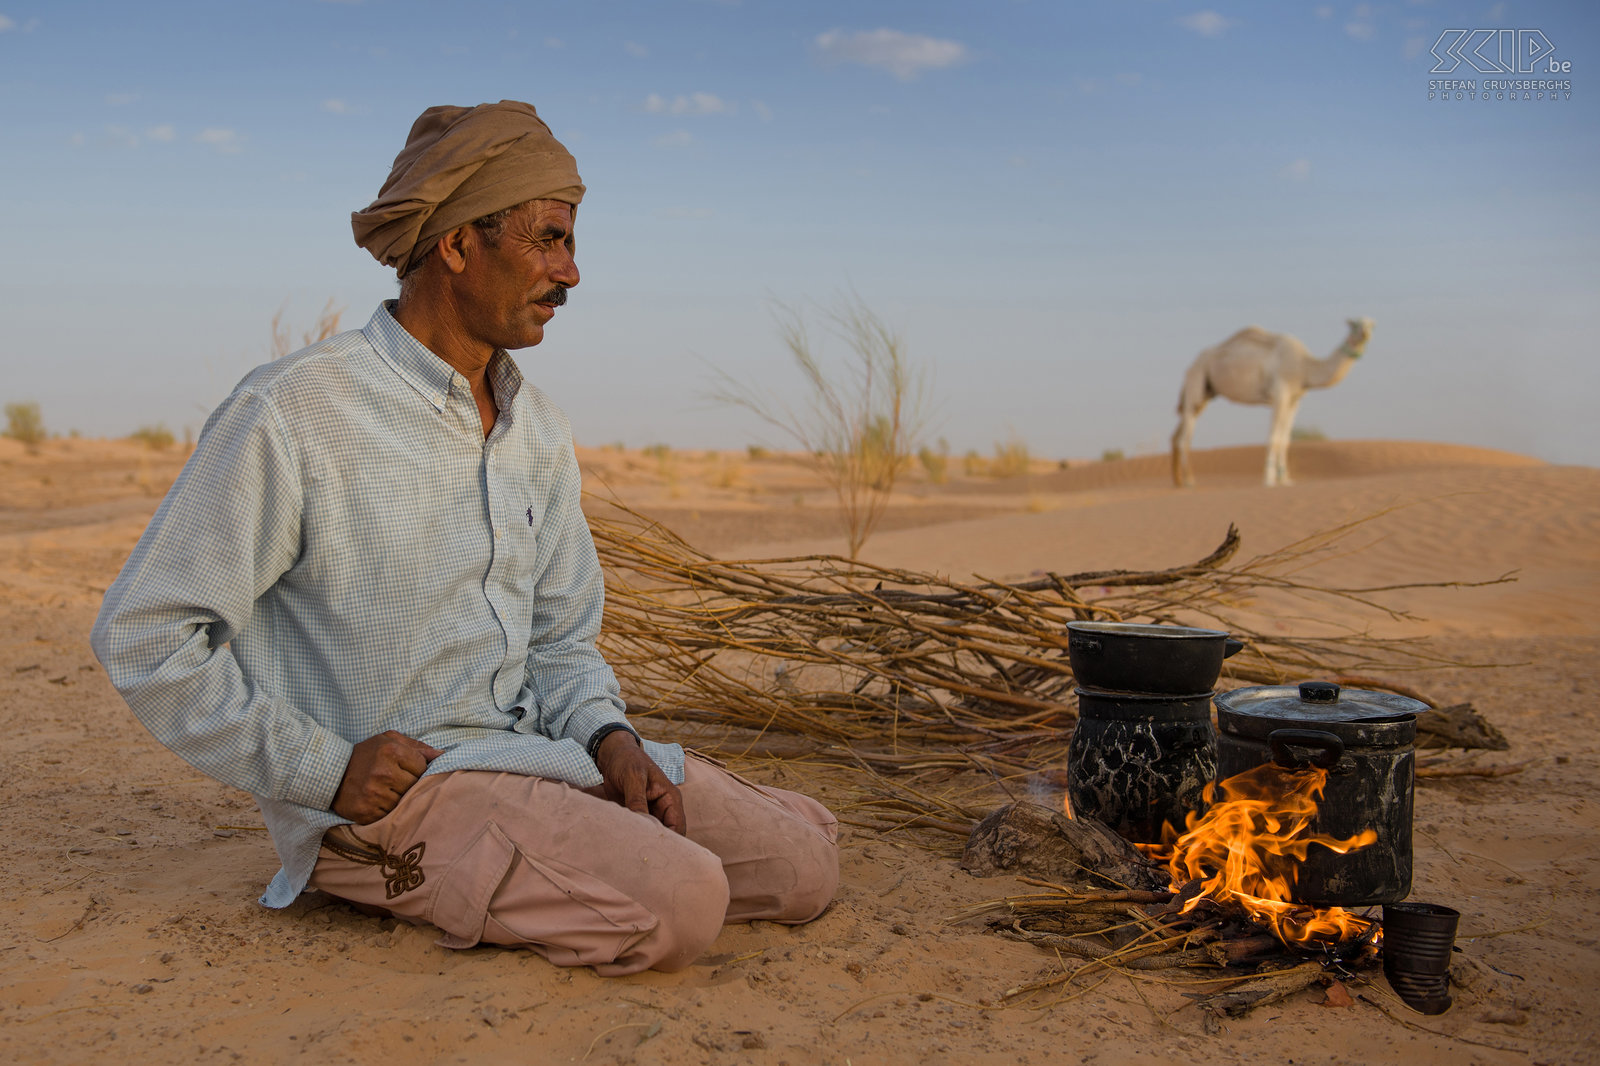 Kokende bedoeien Onze begeleider Abdellah begint met koken van onze eerste avondmaal in de woestijn. De Bedoeïenen zijn Berbers die traditioneel een nomadisch bestaan kennen en een groot leefgebied hebben dat bijna de gehele Sahara omvat. Tegenwoordig leven de meeste onder hen ook in kleine oasen of in dorpen. Stefan Cruysberghs